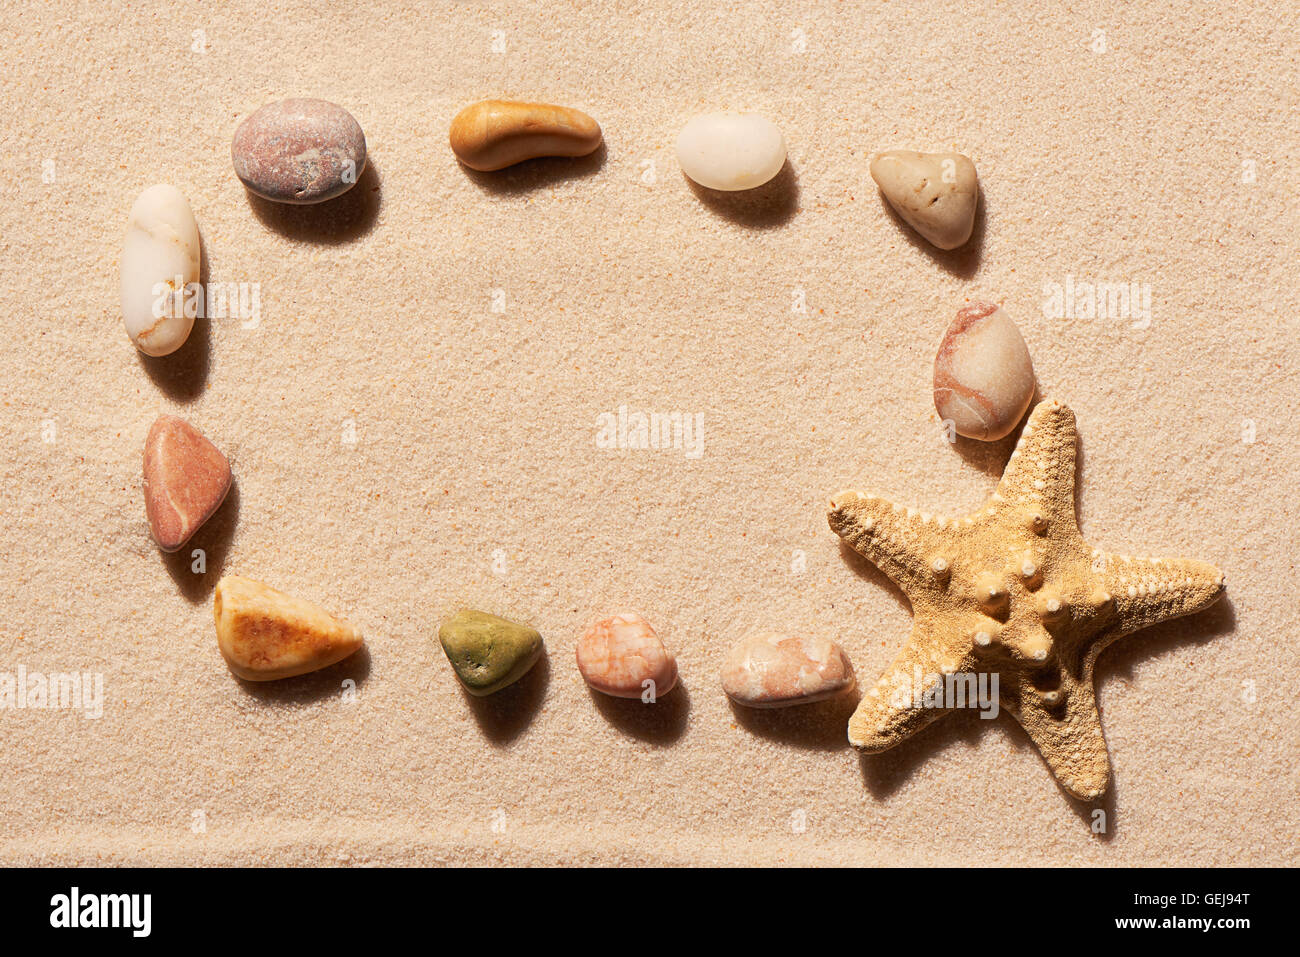 Cadre rectangulaire de pierres et d'étoiles de mer sur le sable. Fond de plage d'été. Vue de dessus Banque D'Images